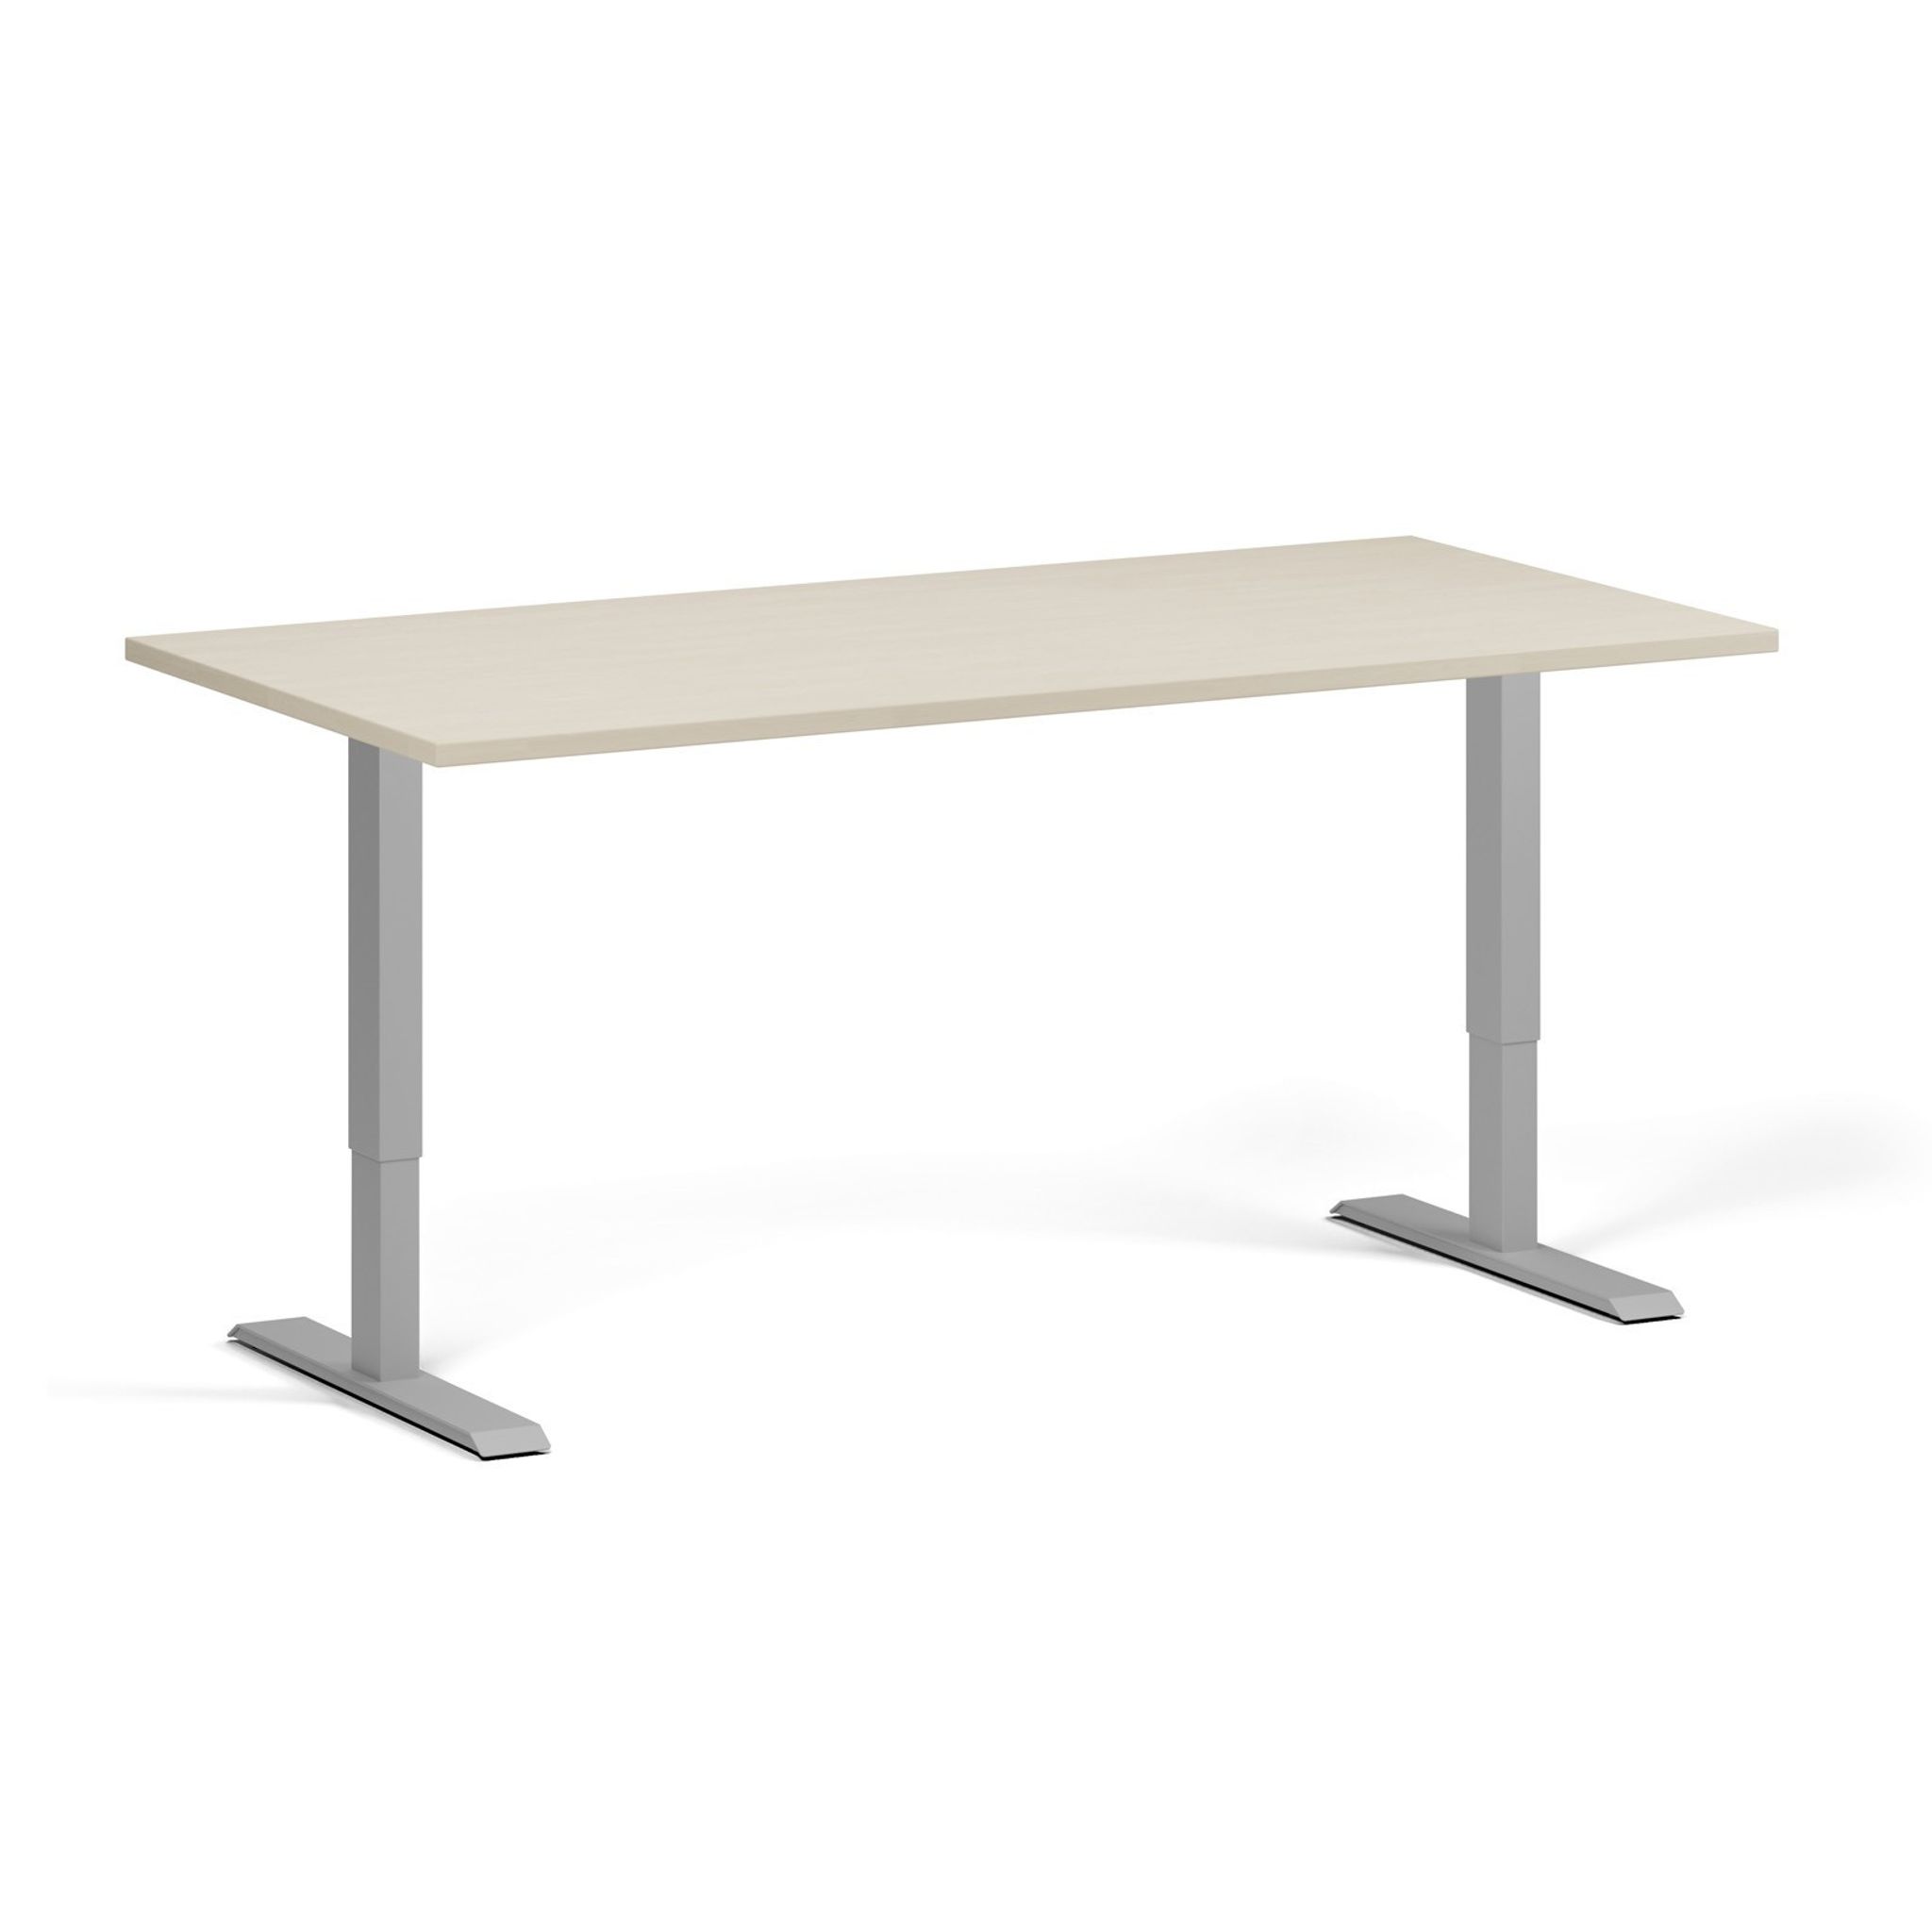 Výškově nastavitelný stůl, 1 motor, 745 - 1235 mm, deska 1600 x 800 mm, šedá podnož, bříza